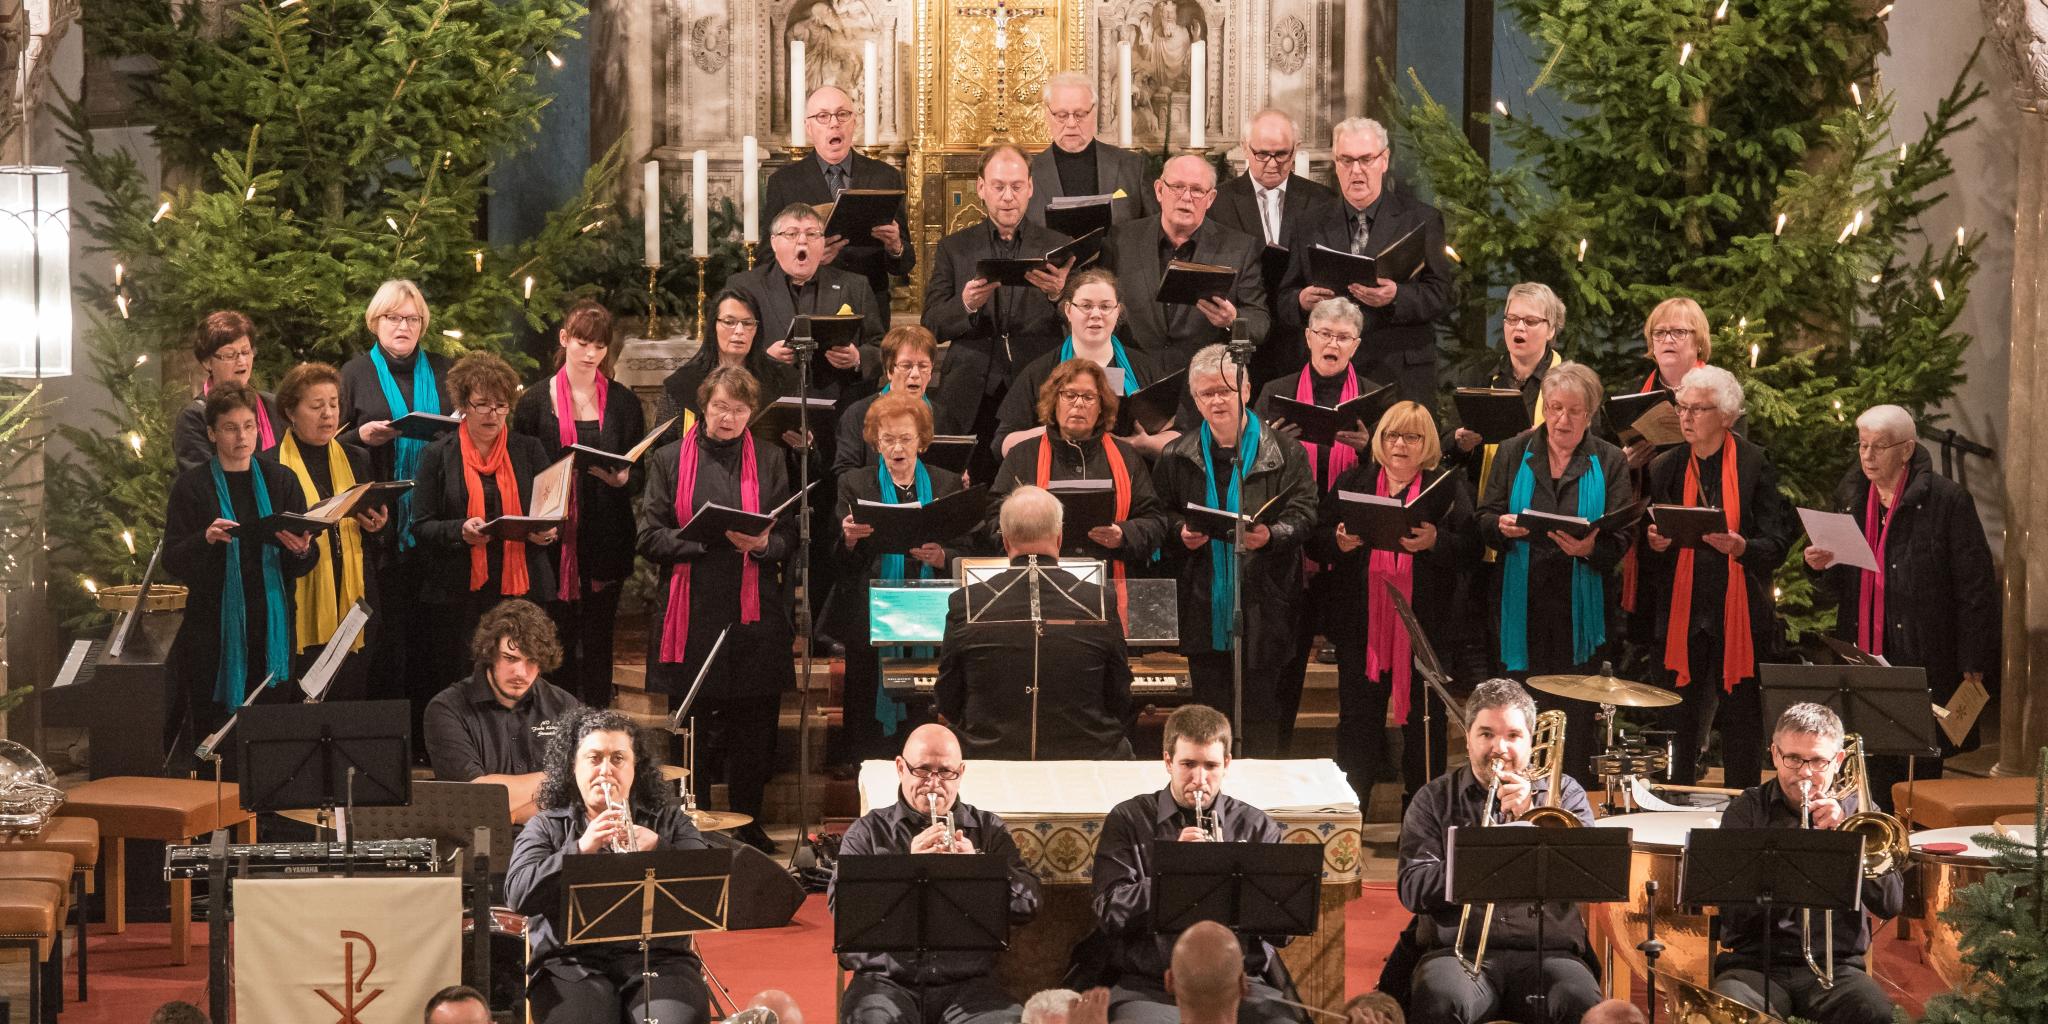 Für den Kirchenchor St. Martin - hier zu sehen bei einem Weihnachtskonzert - wird der Auftritt ein Einschnitt sein – nach 108 Jahren stellt er seine Sangestätigkeit vorübergehend ein.